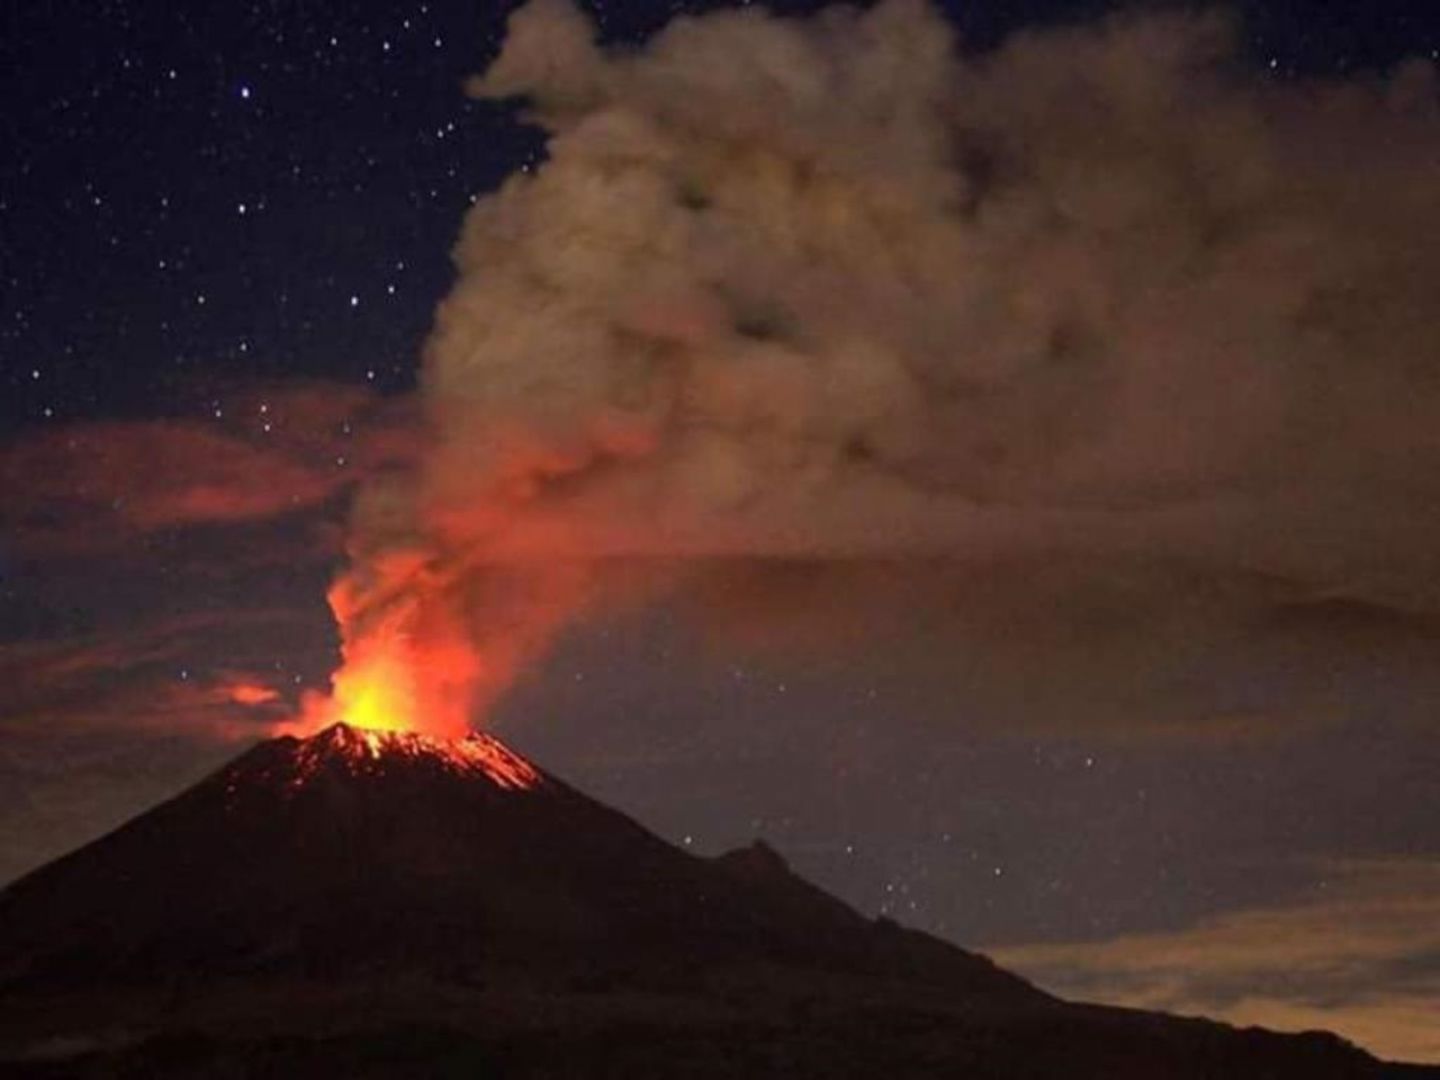 Ocurre explosión en el Popocatépetl, prevén caída de ceniza en Puebla